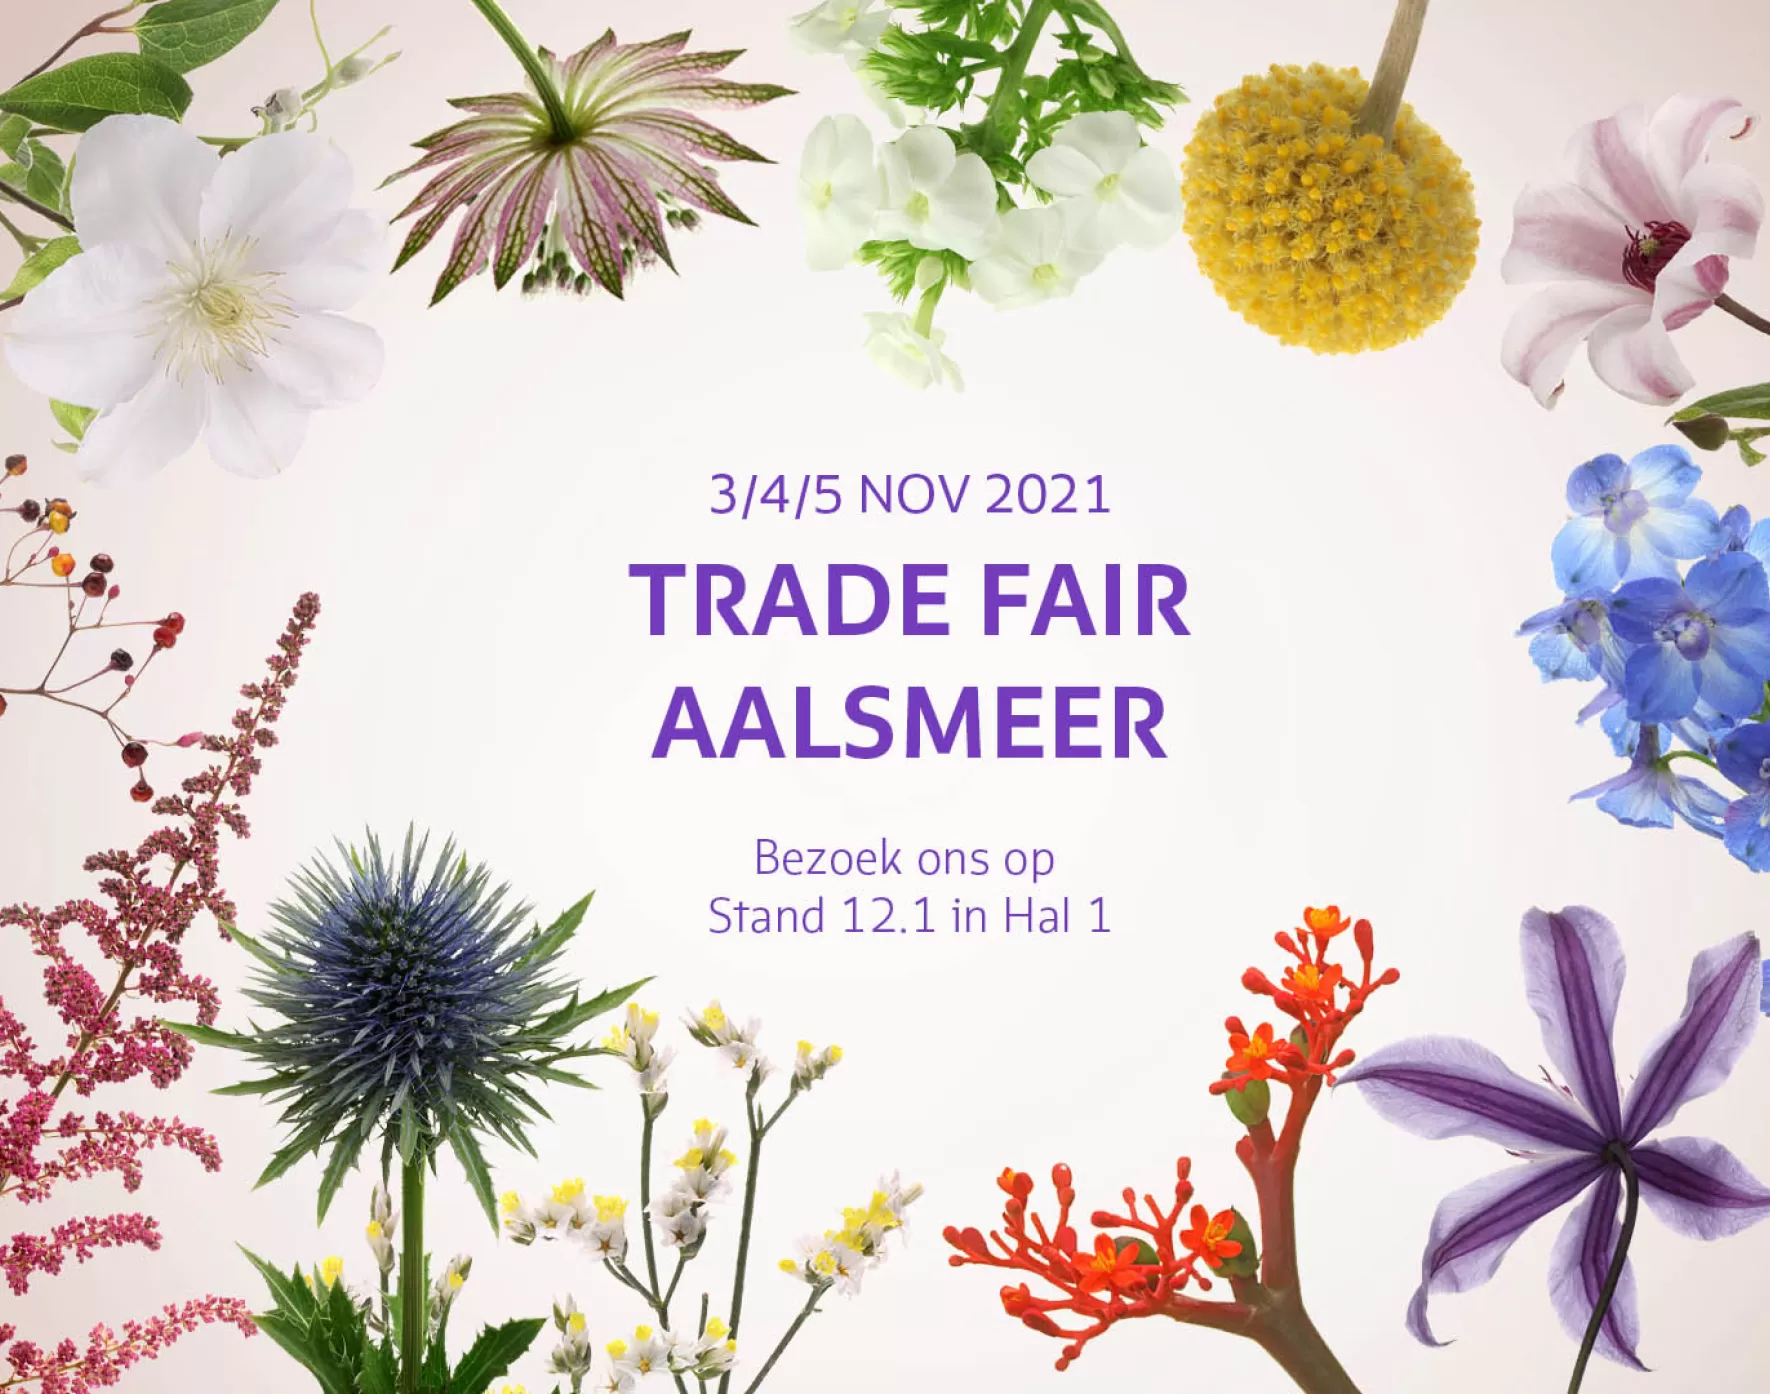 Trade Fair Aalsmeer 2021